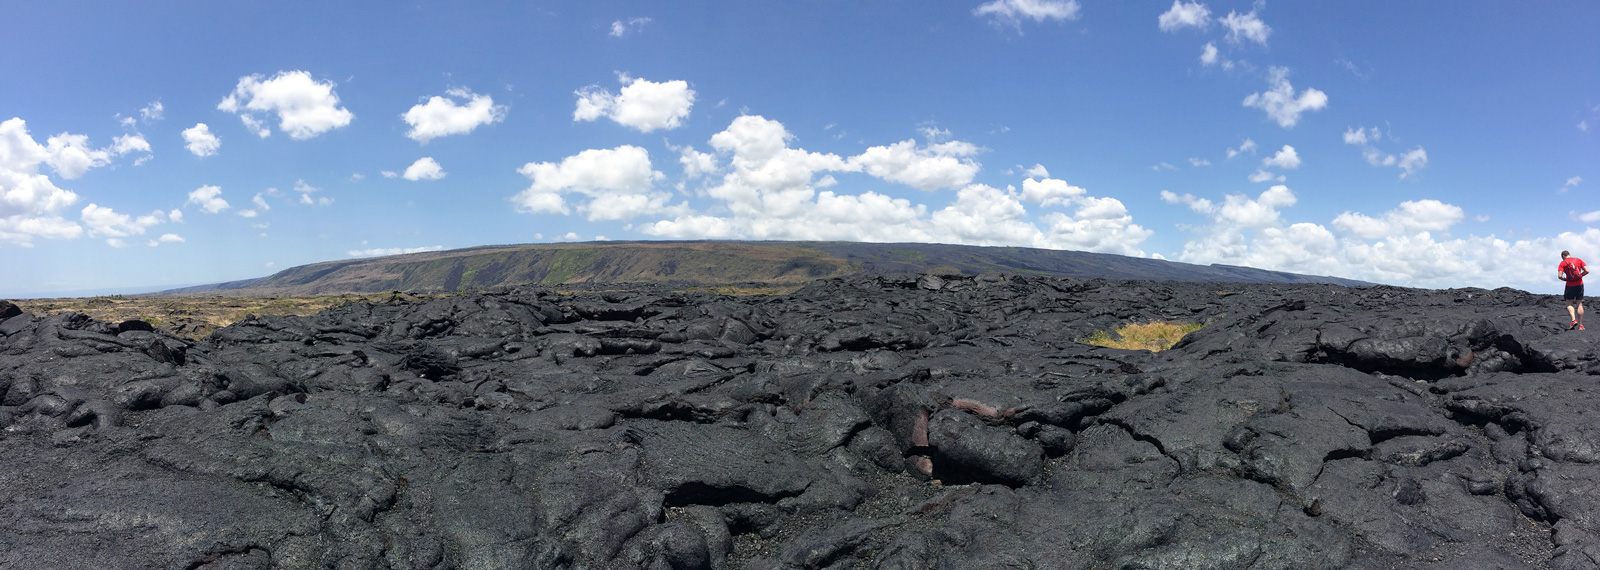 Hawaii Volcanoes National Park - Big Island of Hawaii